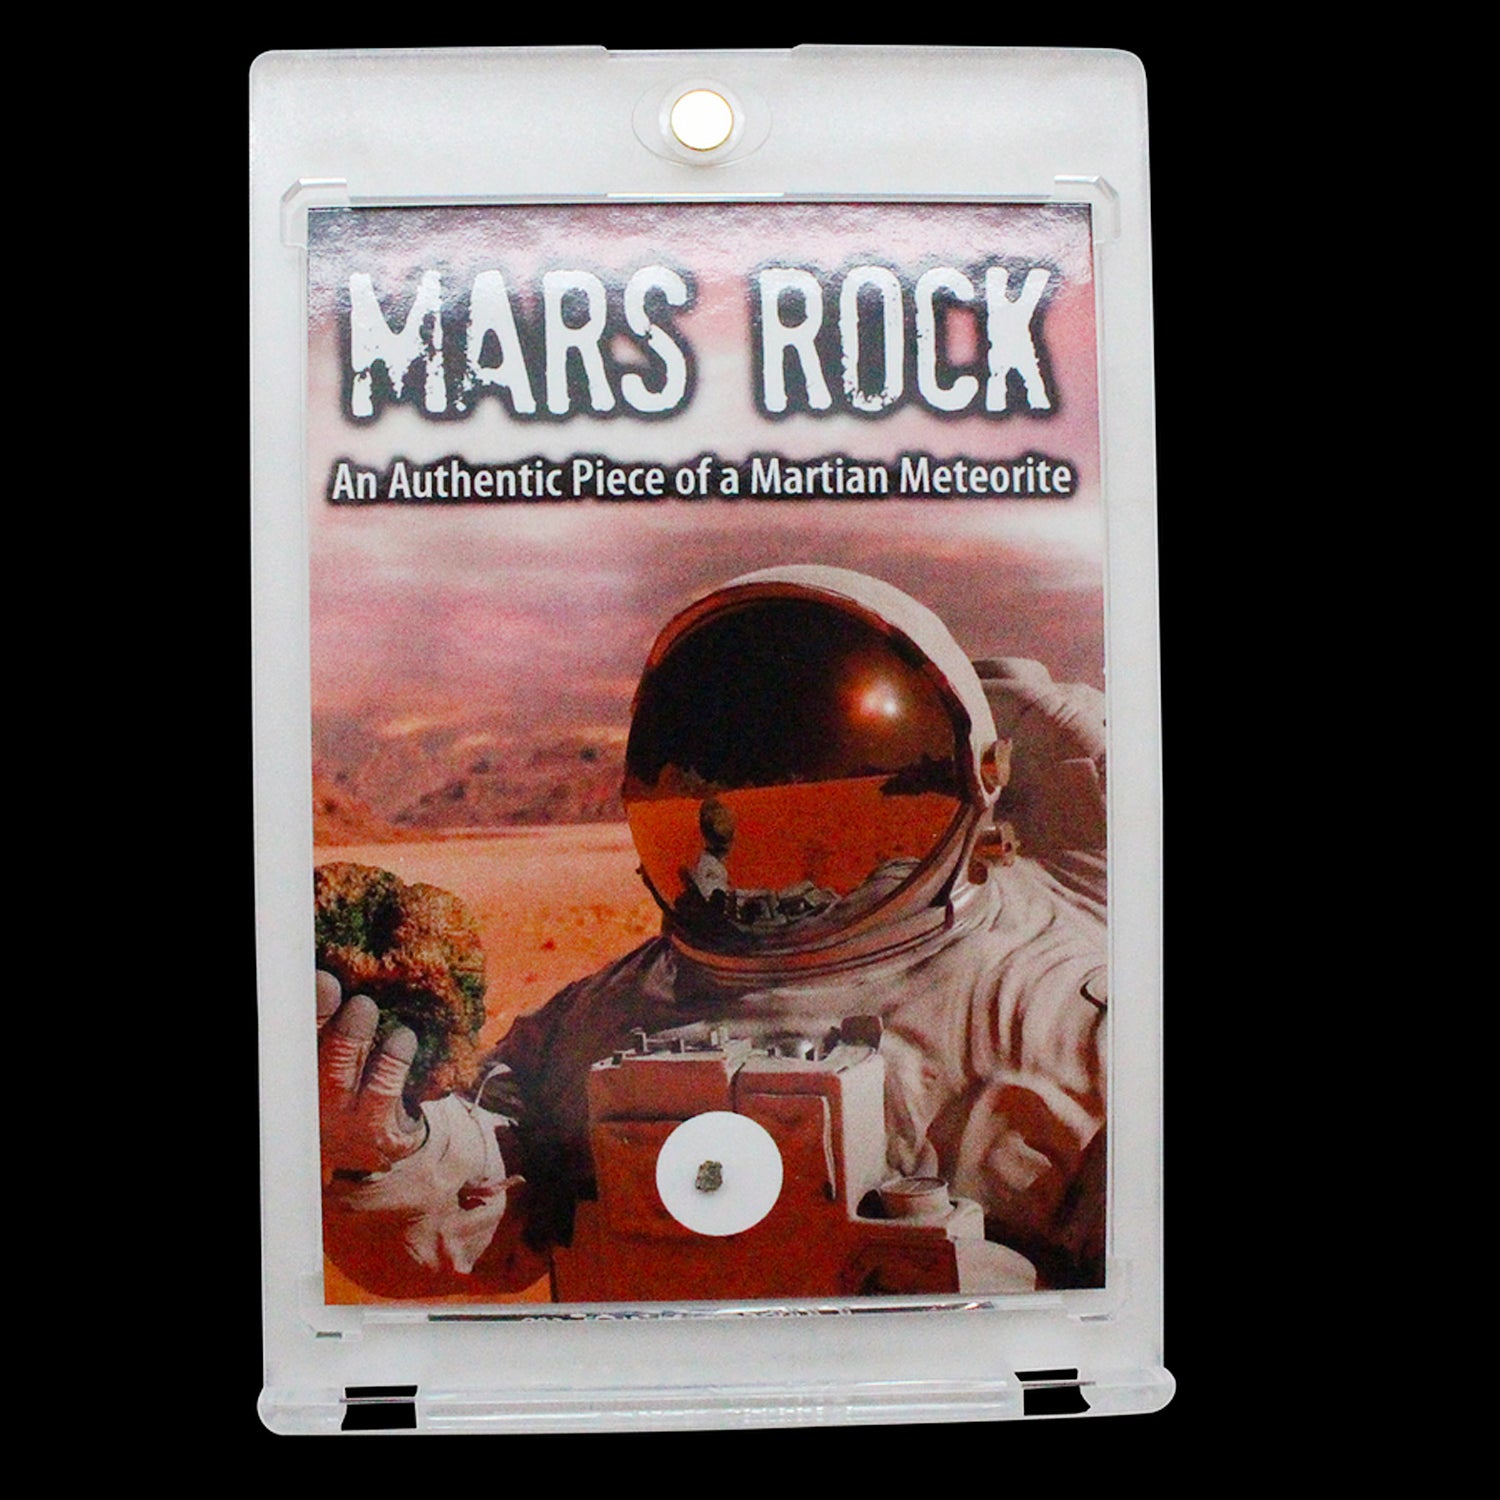 Genuine Mars Rock Meteorite in Display Box.